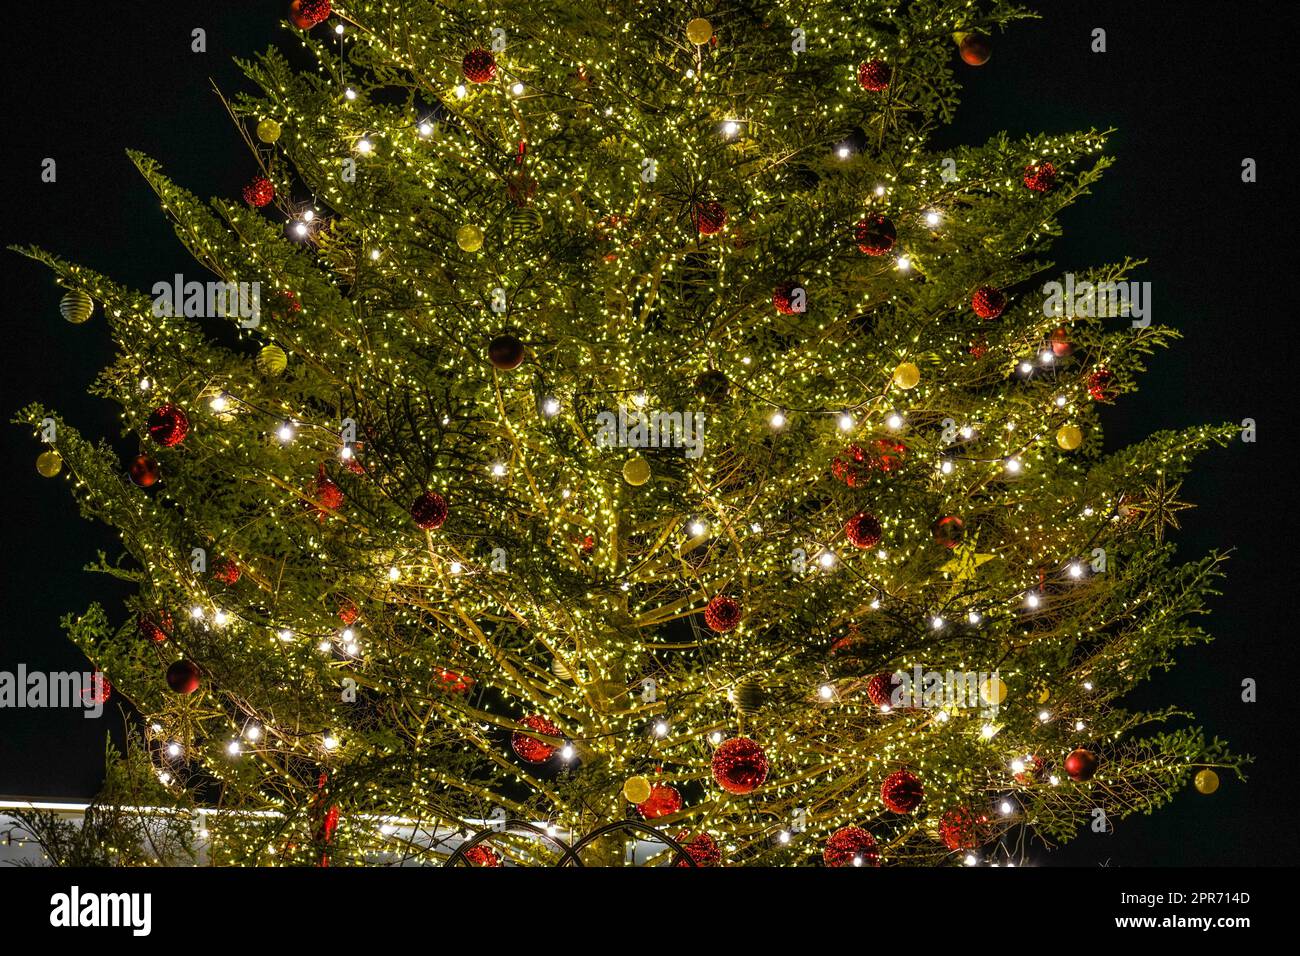 Shiny Christmas tree (Christmas Market) Stock Photo